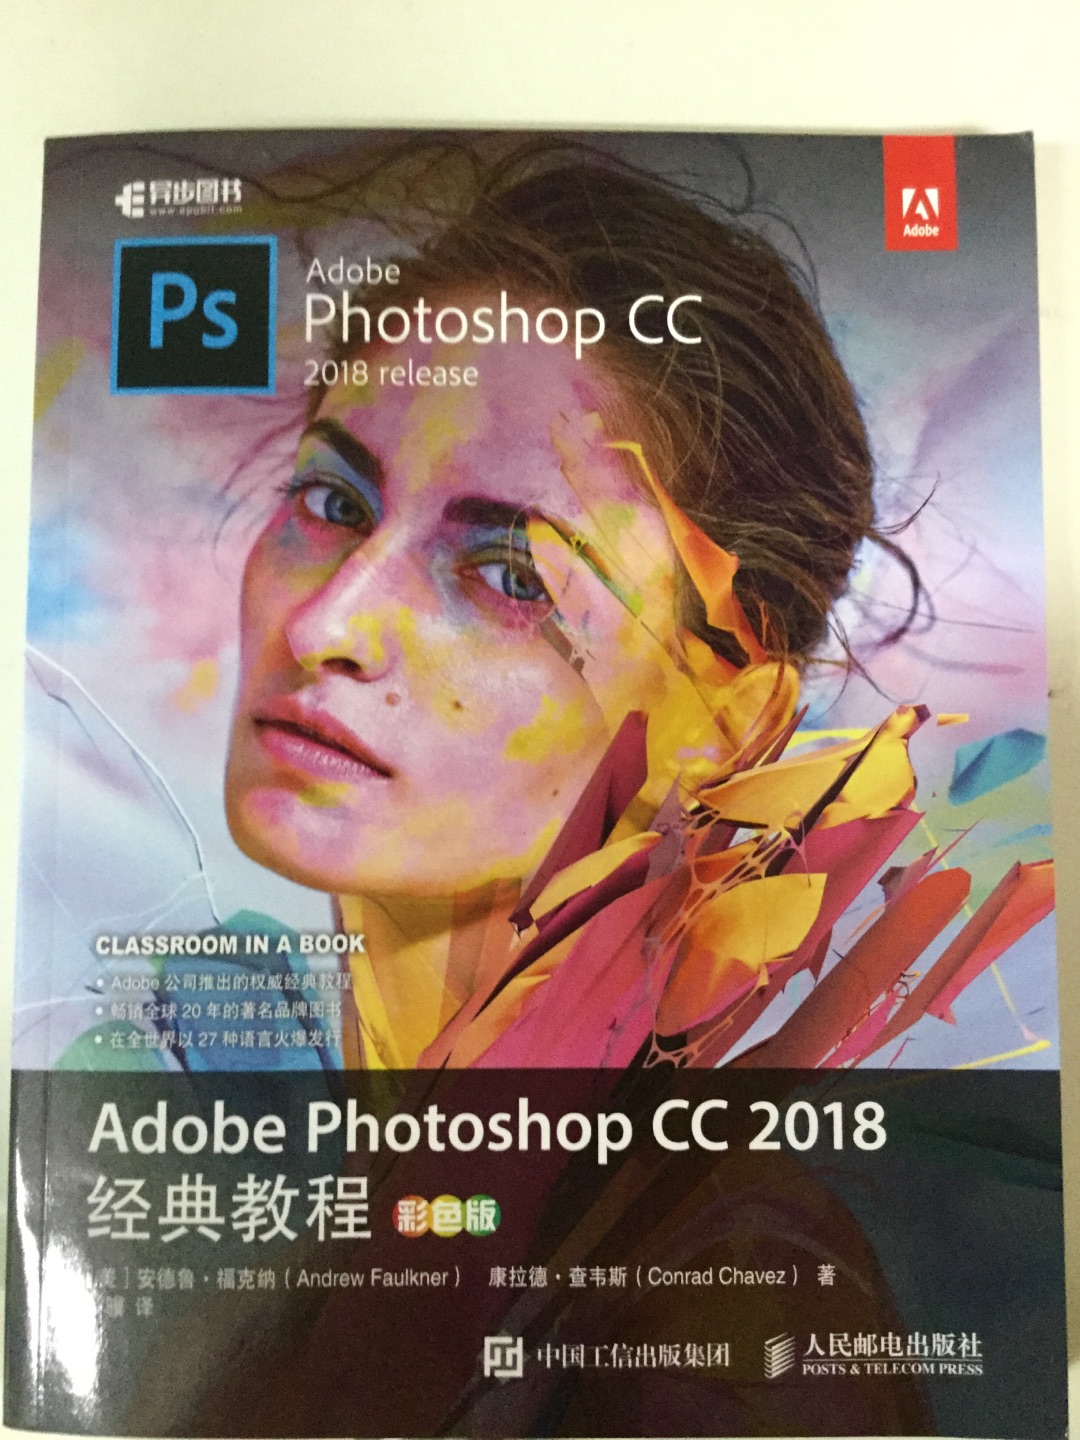 官方教程不错，封面就是Photoshop CC2018的打开加载界面，nice